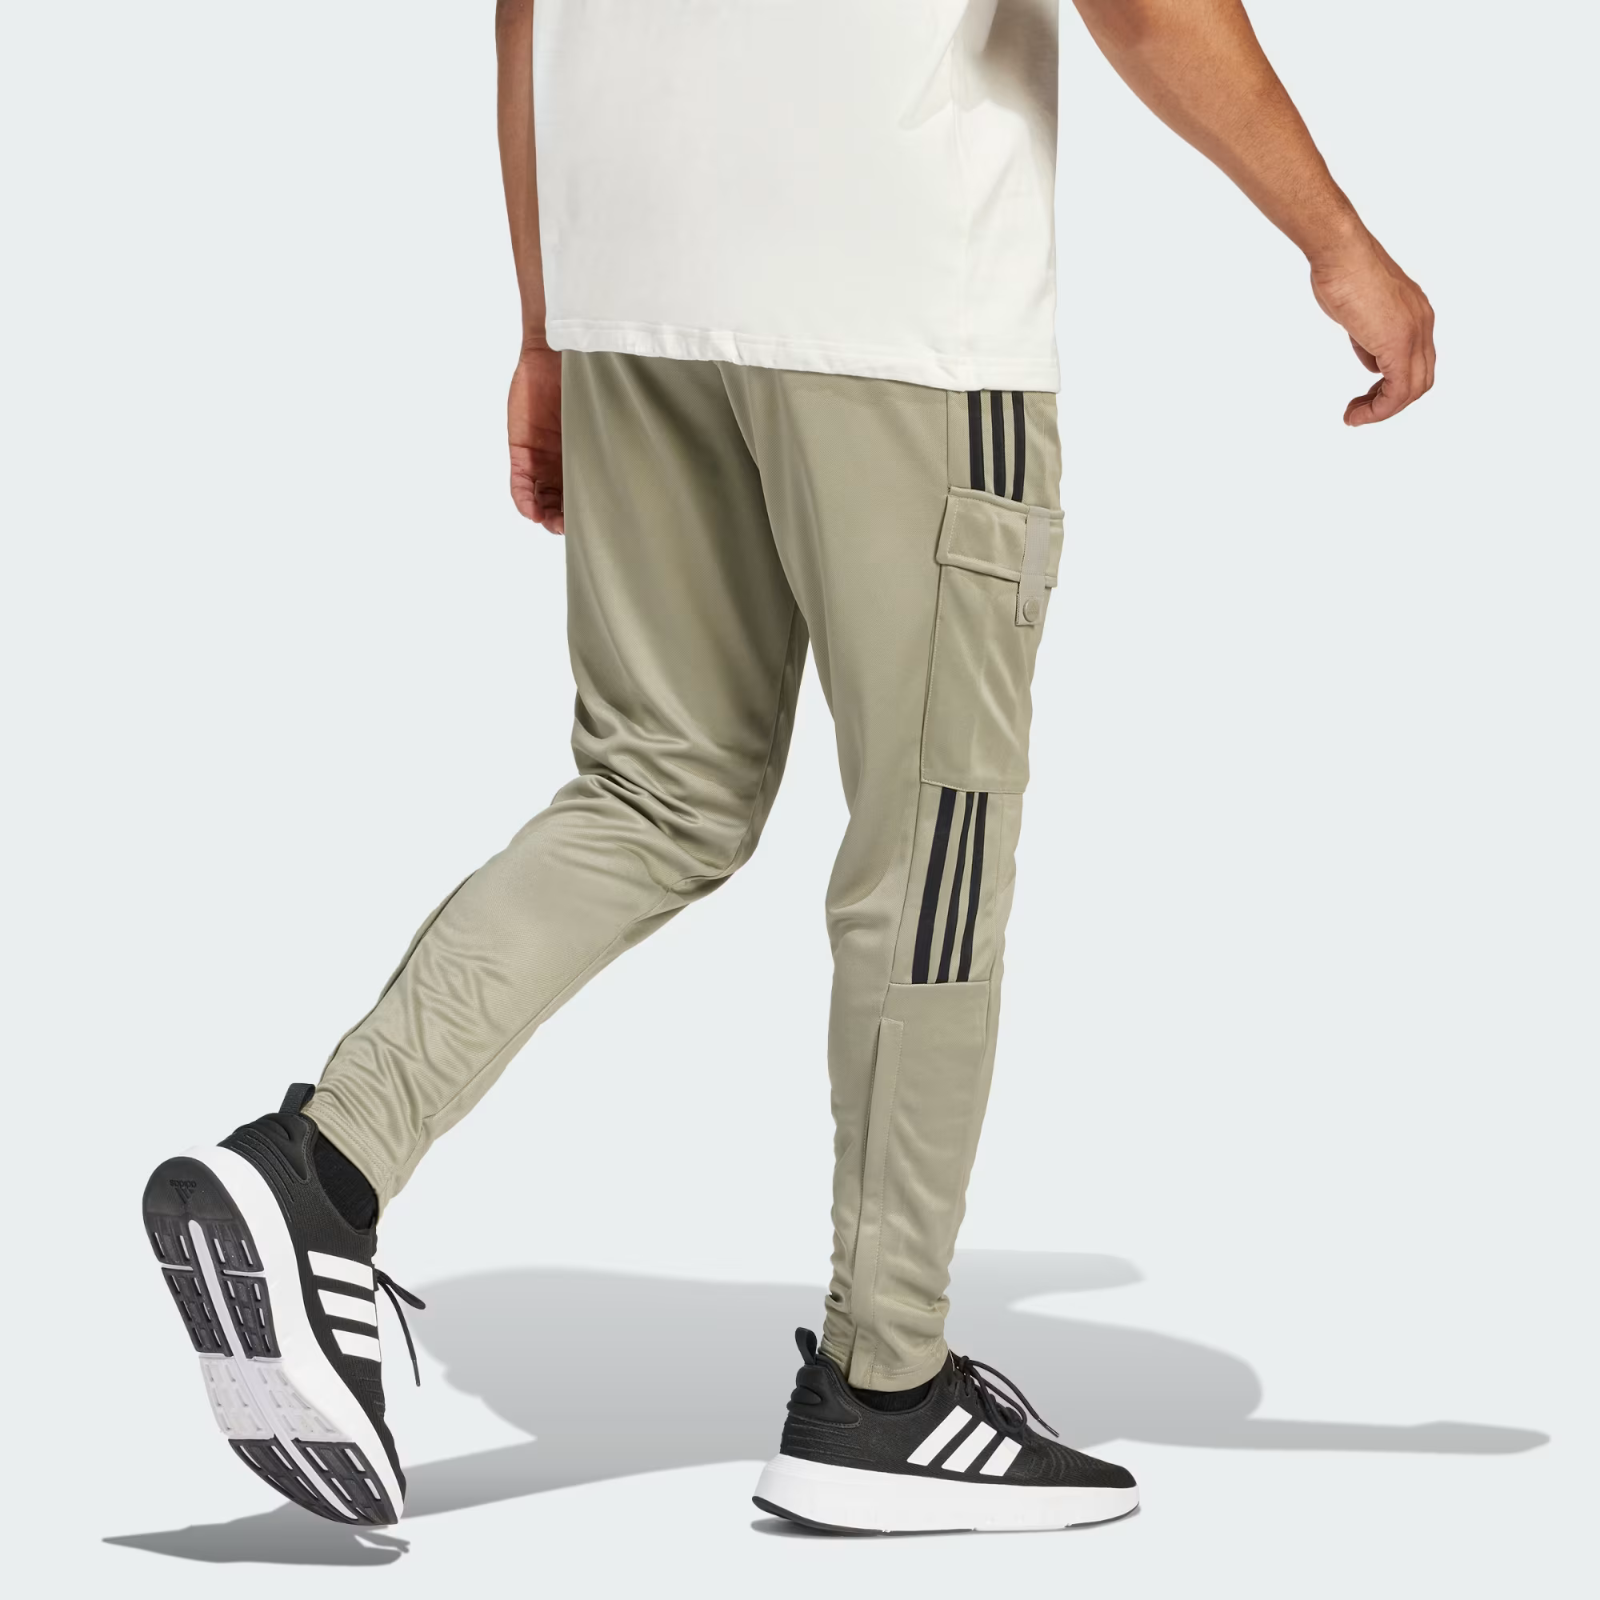 Tiro Cargo Adidas similar 50 Uomo Pantaloni Comfort and items